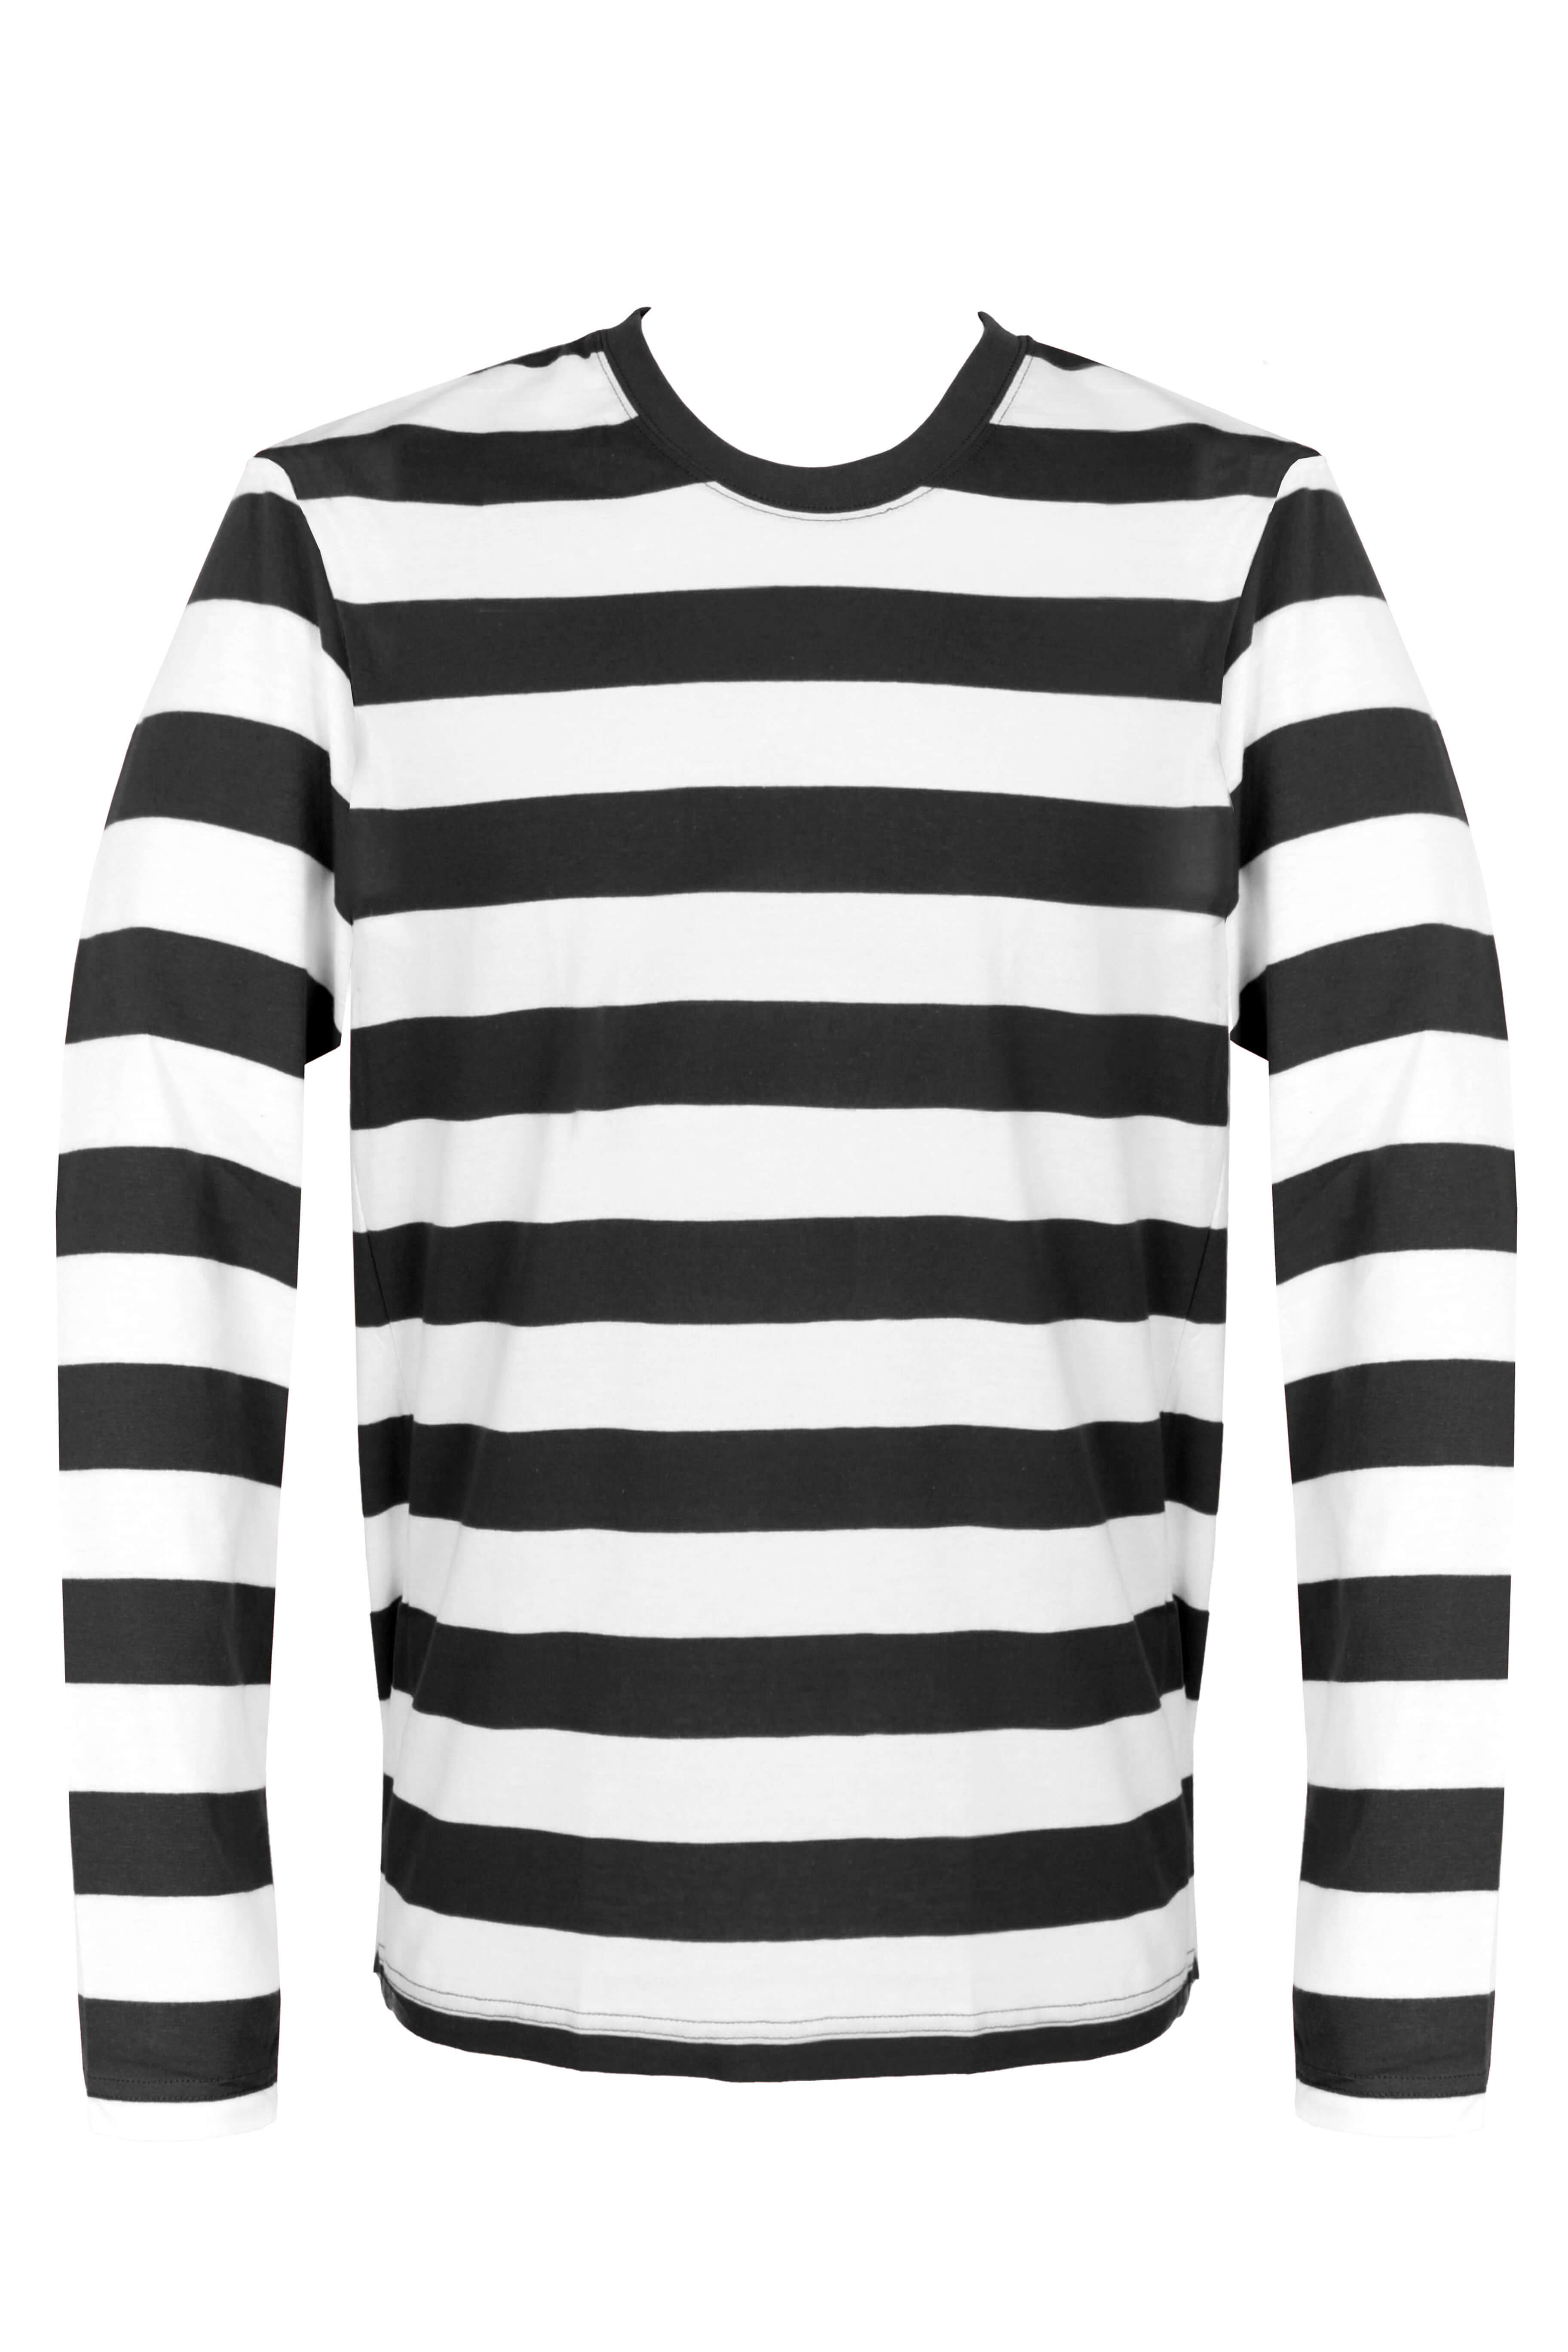 Update 138+ black white striped dress super hot - seven.edu.vn